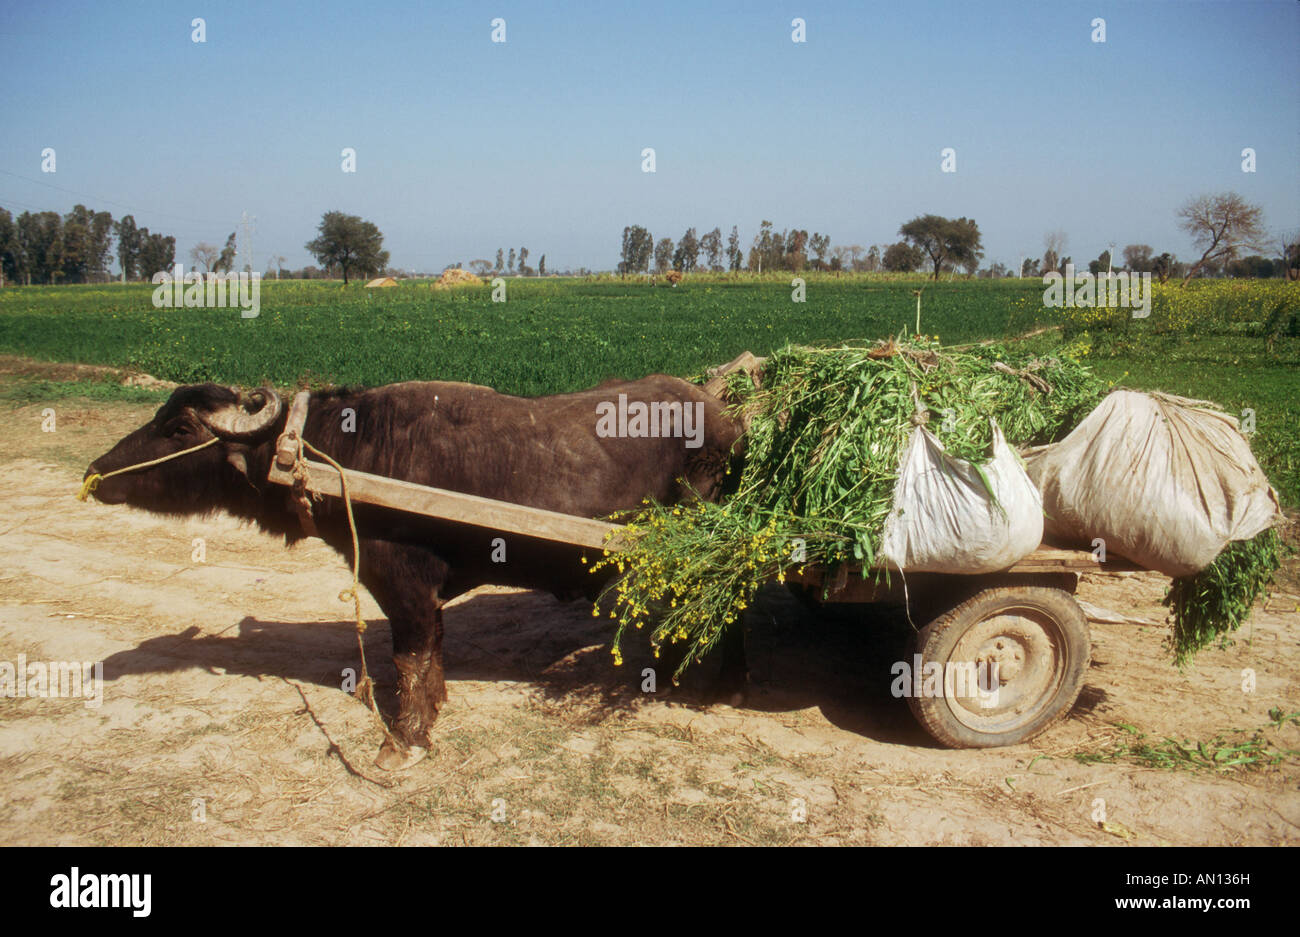 Buffalo panier laden avec une moutarde comme crop utilisés pour l'alimentation animale dans une ferme dans la province du Punjab, en Inde. Banque D'Images